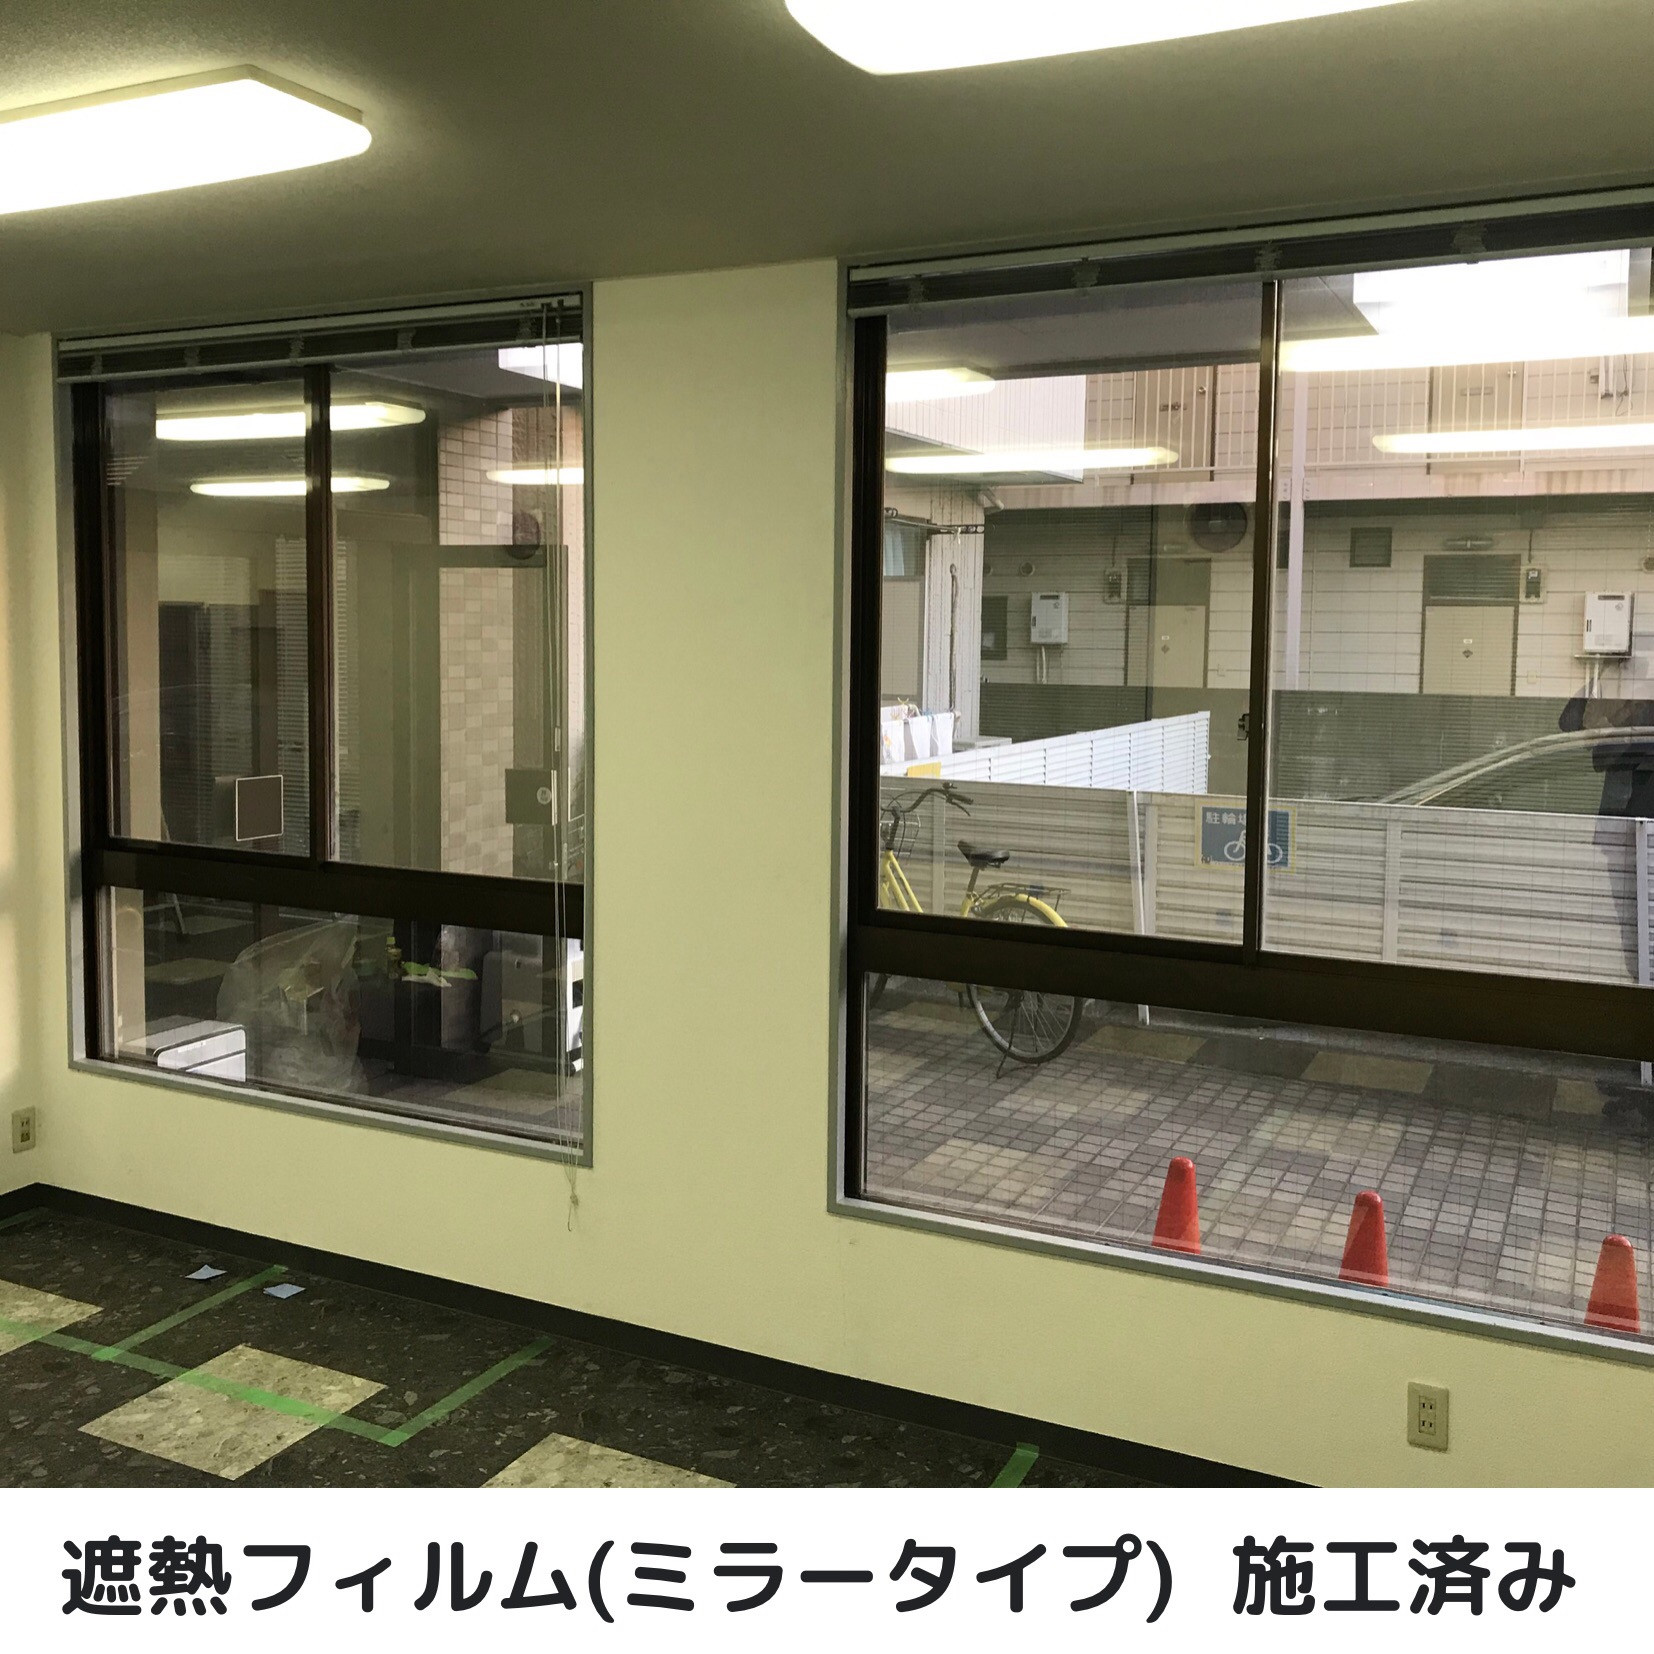 埼玉県狭山市で窓ガラスフィルム施工をお考えの方